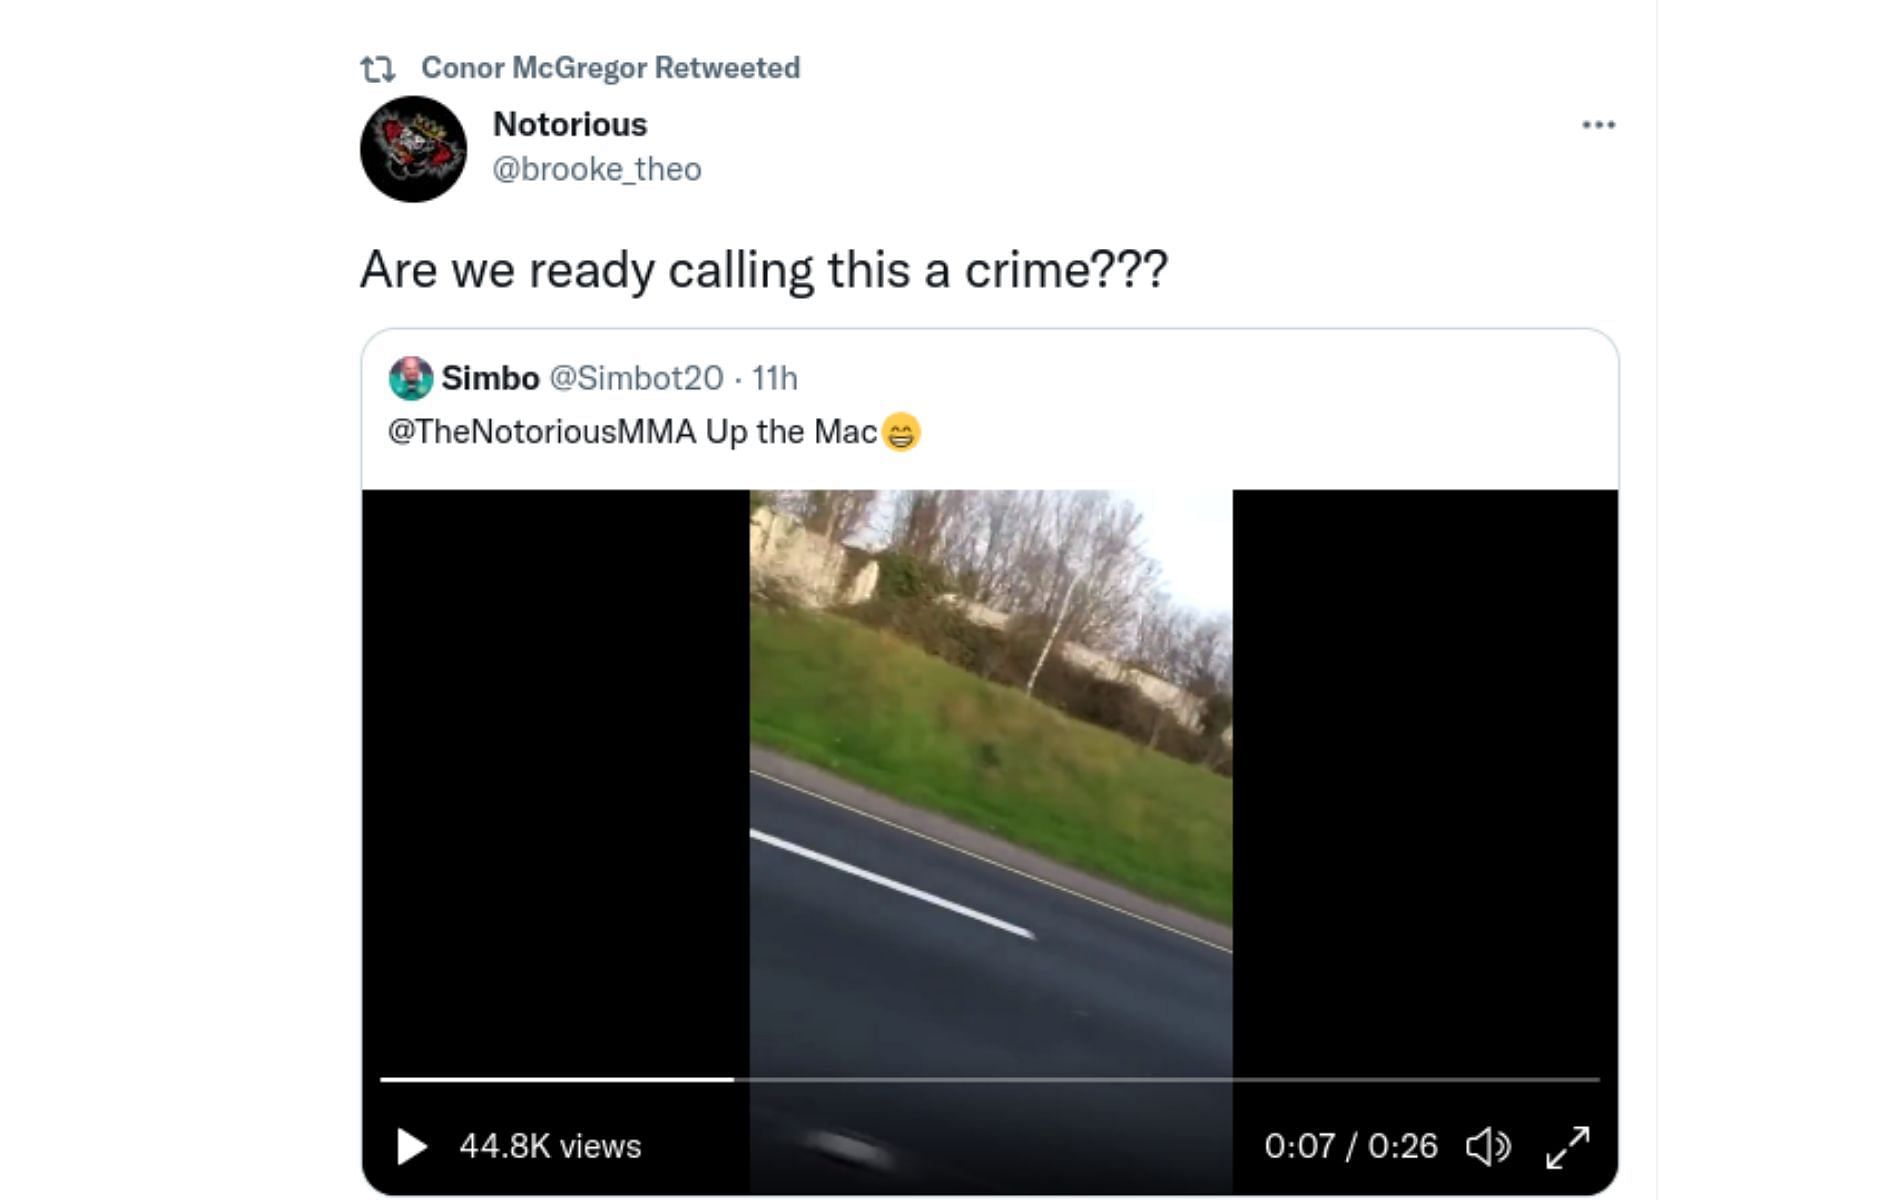 Screenshot of Conor McGregor retweeting the fan video